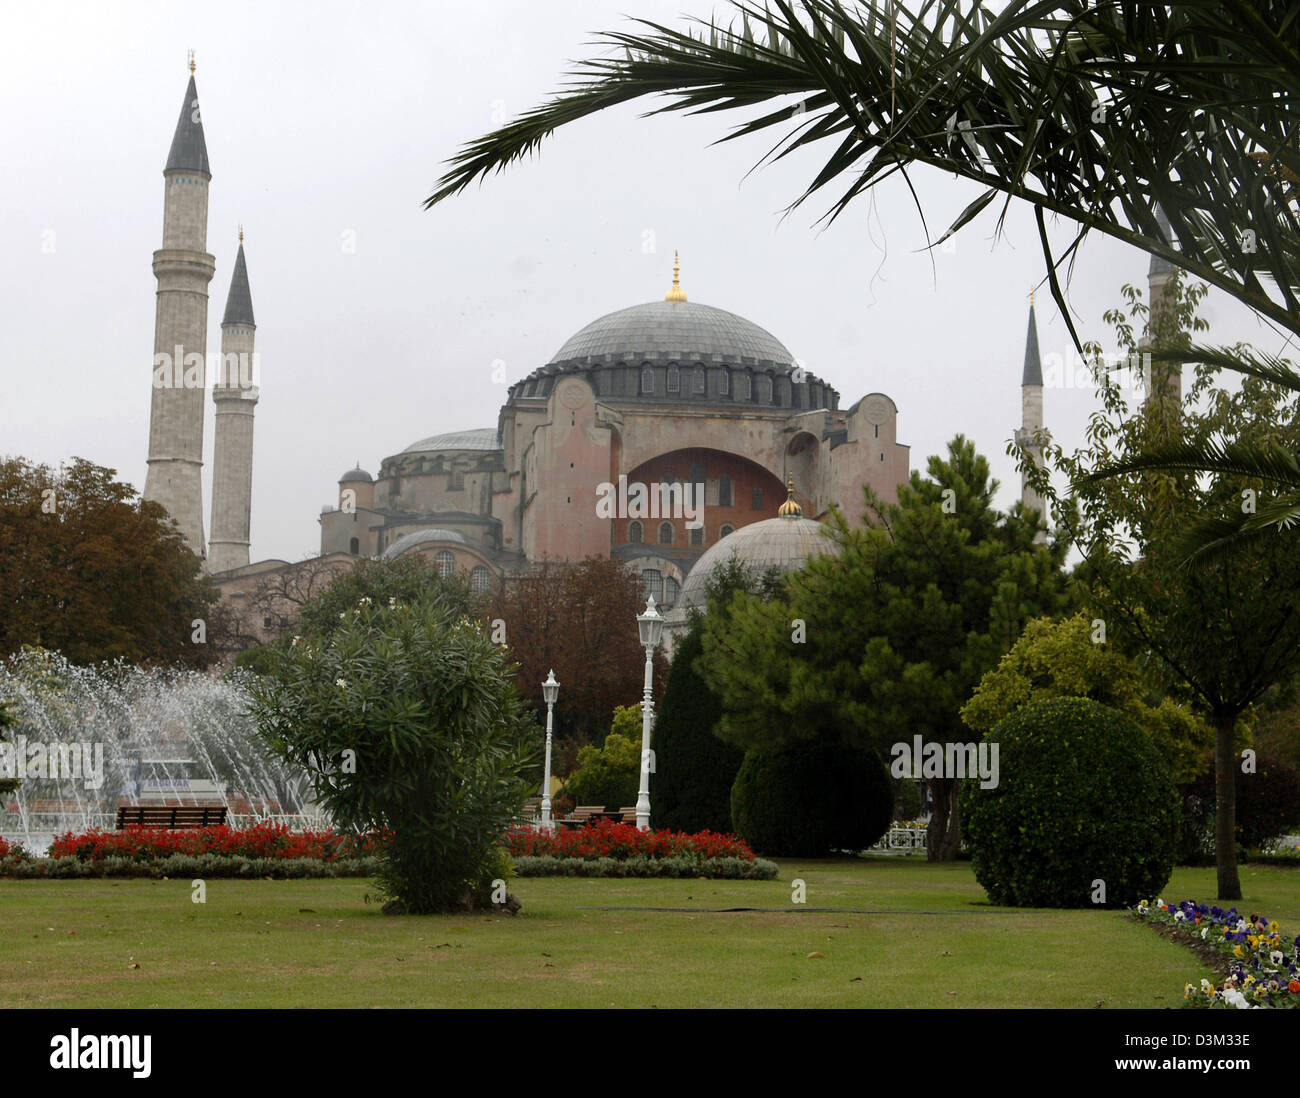 (Dpa) - die Hagia Sophia in Istanbul, Türkei, 19. Oktober 2005. Die Hagia Sophia, die "Kirche der göttlichen Weisheit" wurde von 532 bis 537 gebaut und ist 55,60 m hoch. Die Kirche wurde nach der Eroberung von Constantinopel durch Mehmet II in eine Moschee umgewandelt und mit vier Minaretten ausgestattet. Seit 1934 ist es ein Museum. Es bekam 1985 in Liste des UNESCO-Weltkulturerbes aufgenommen. Foto: Stockfoto